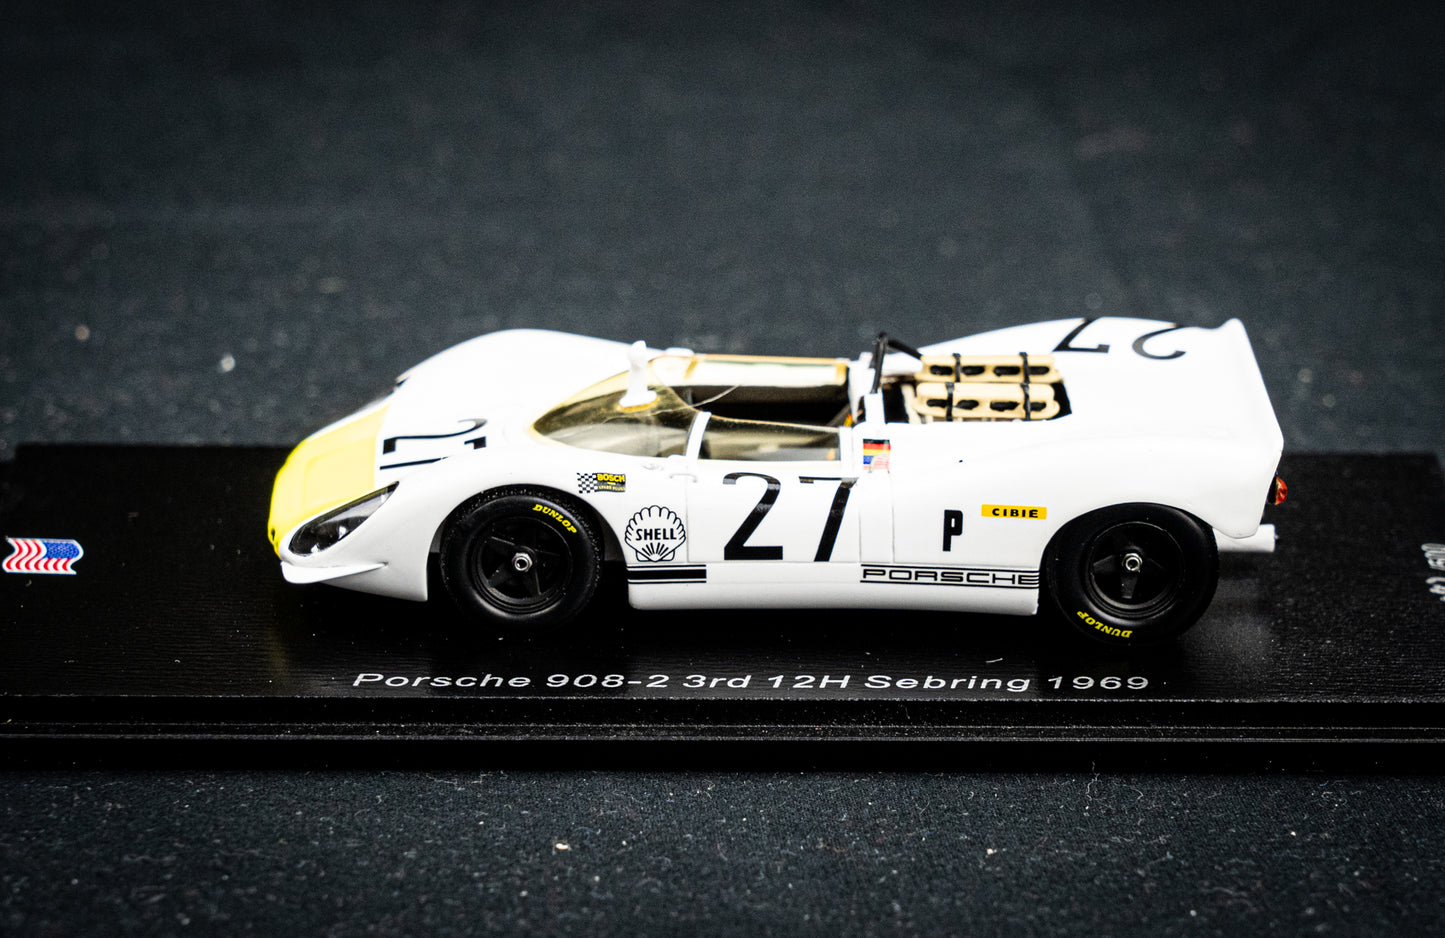 Porsche 908-2 #27 lim. 500 Stk. Stommelen / Buzzetta / Ahrens - 3rd 12h Sebring 1969 - Spark 1:43